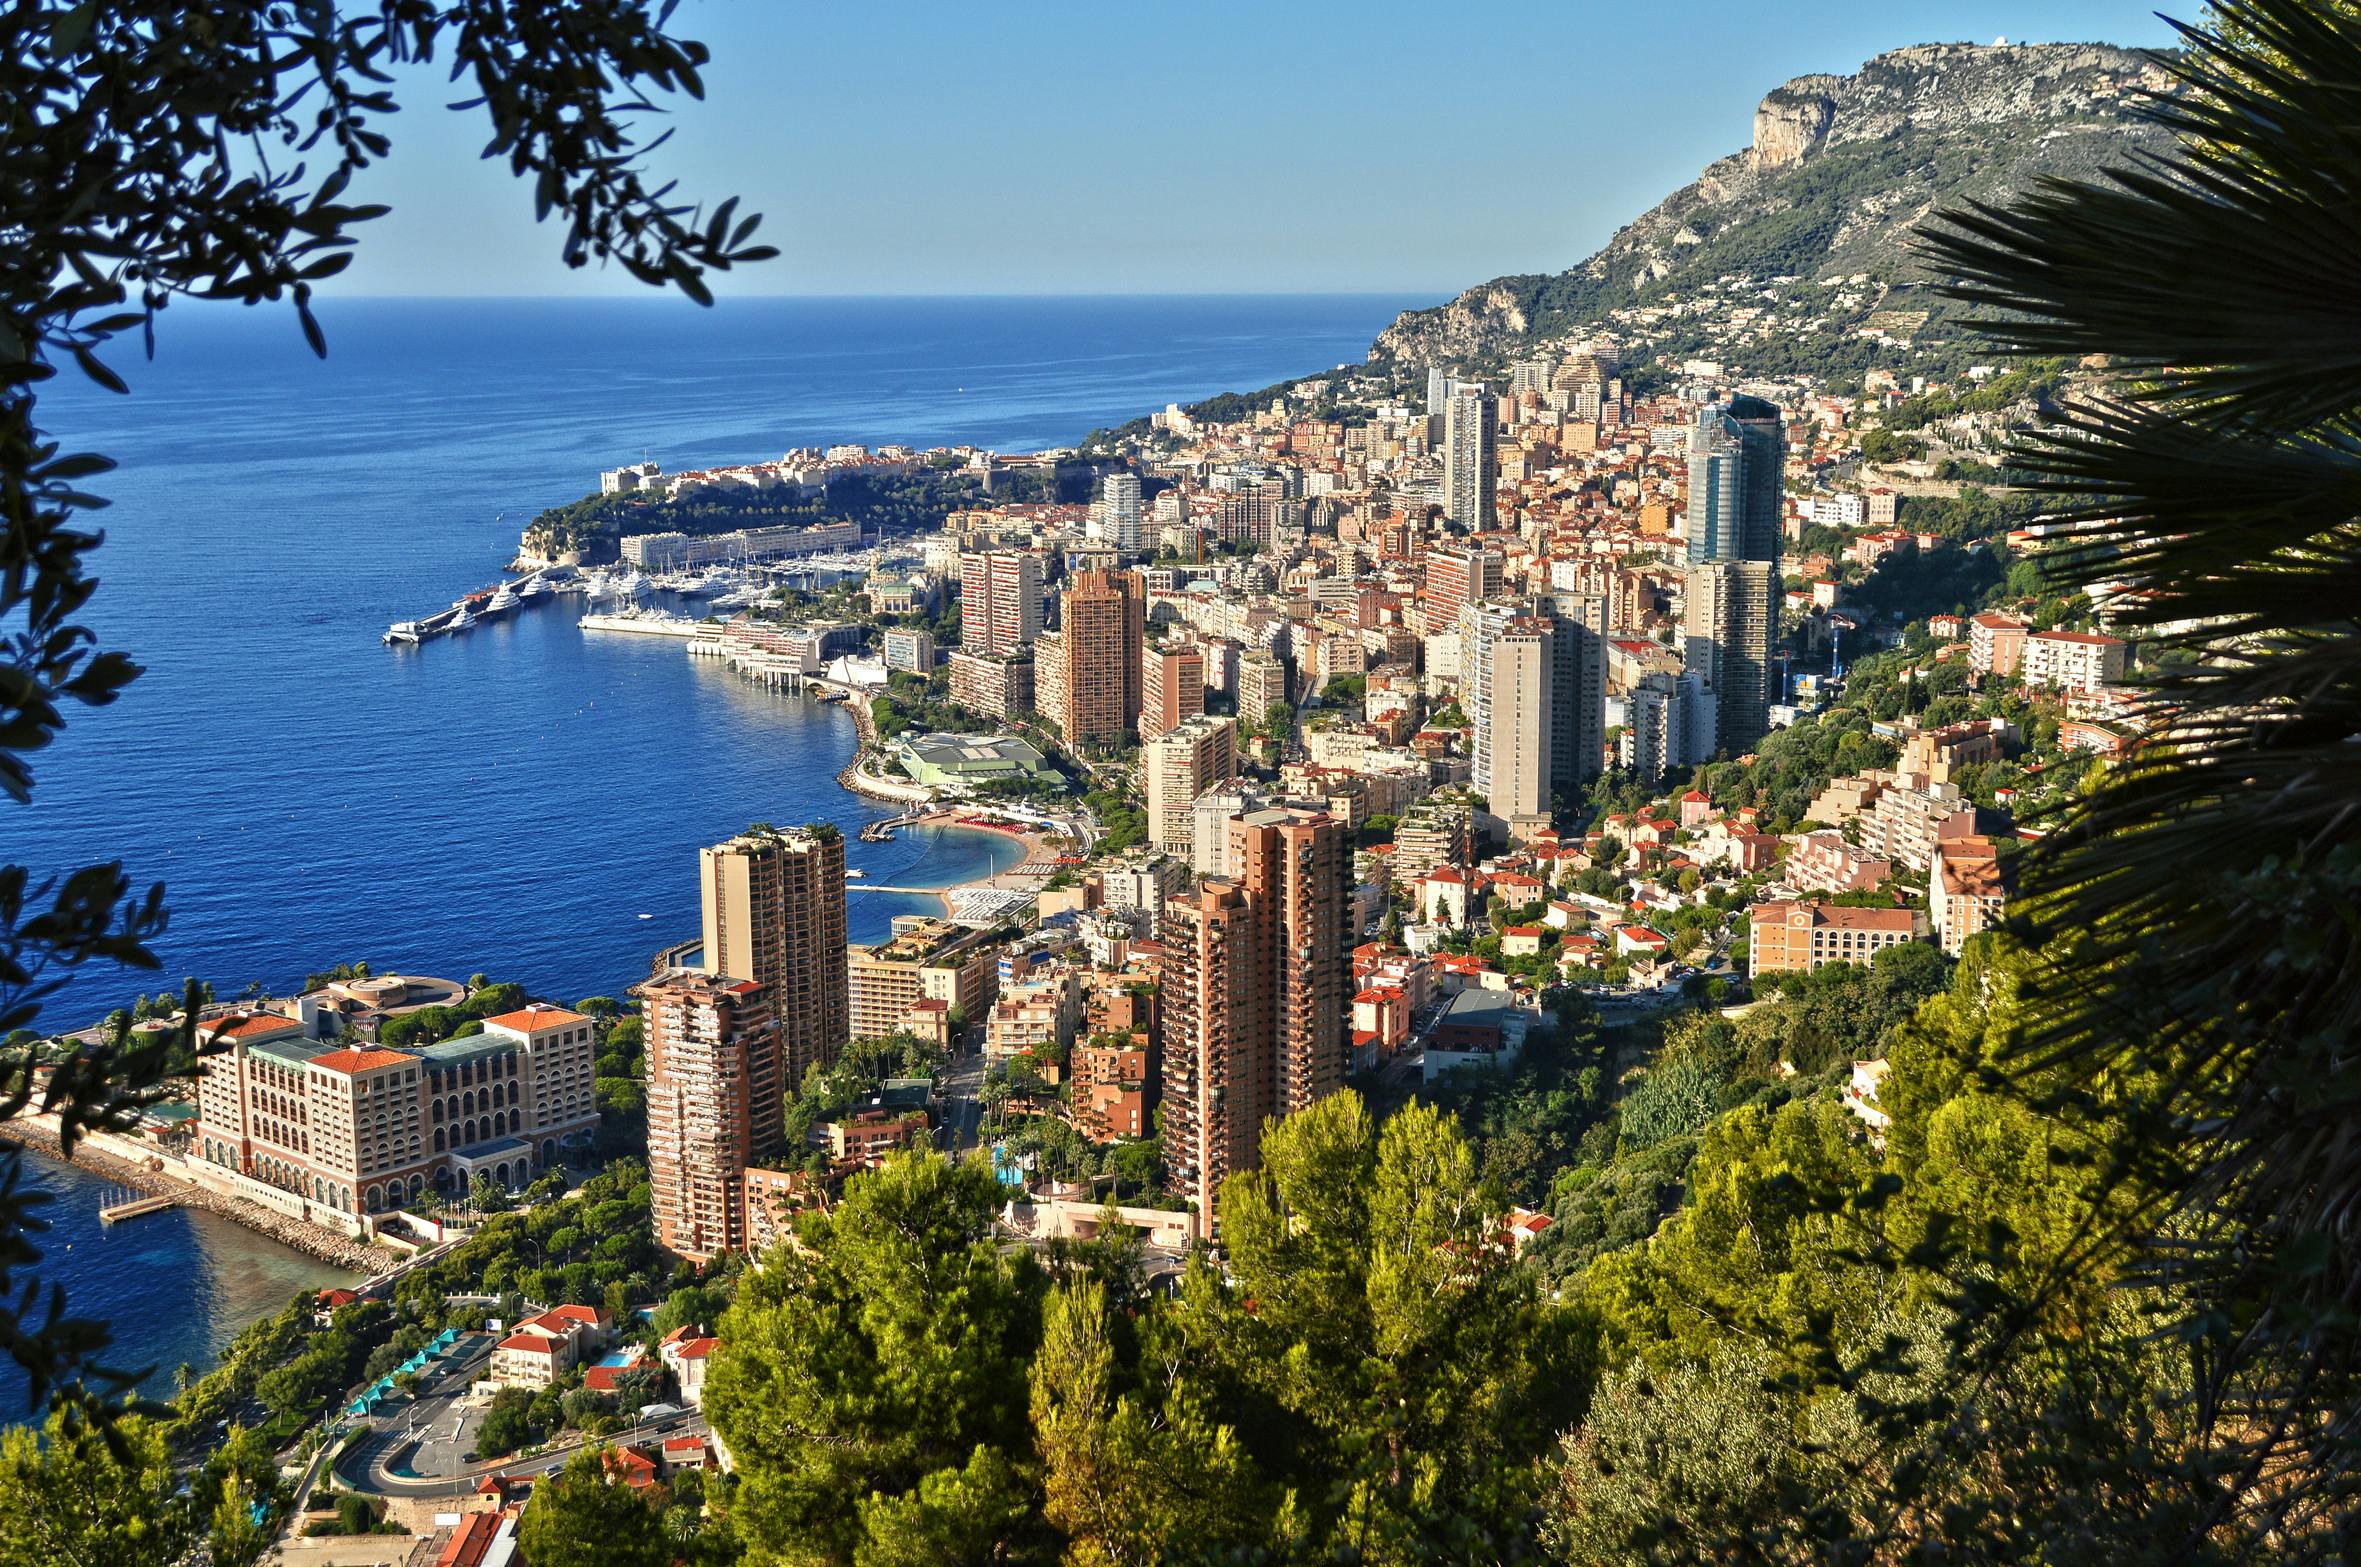 Monaco (1).jpg